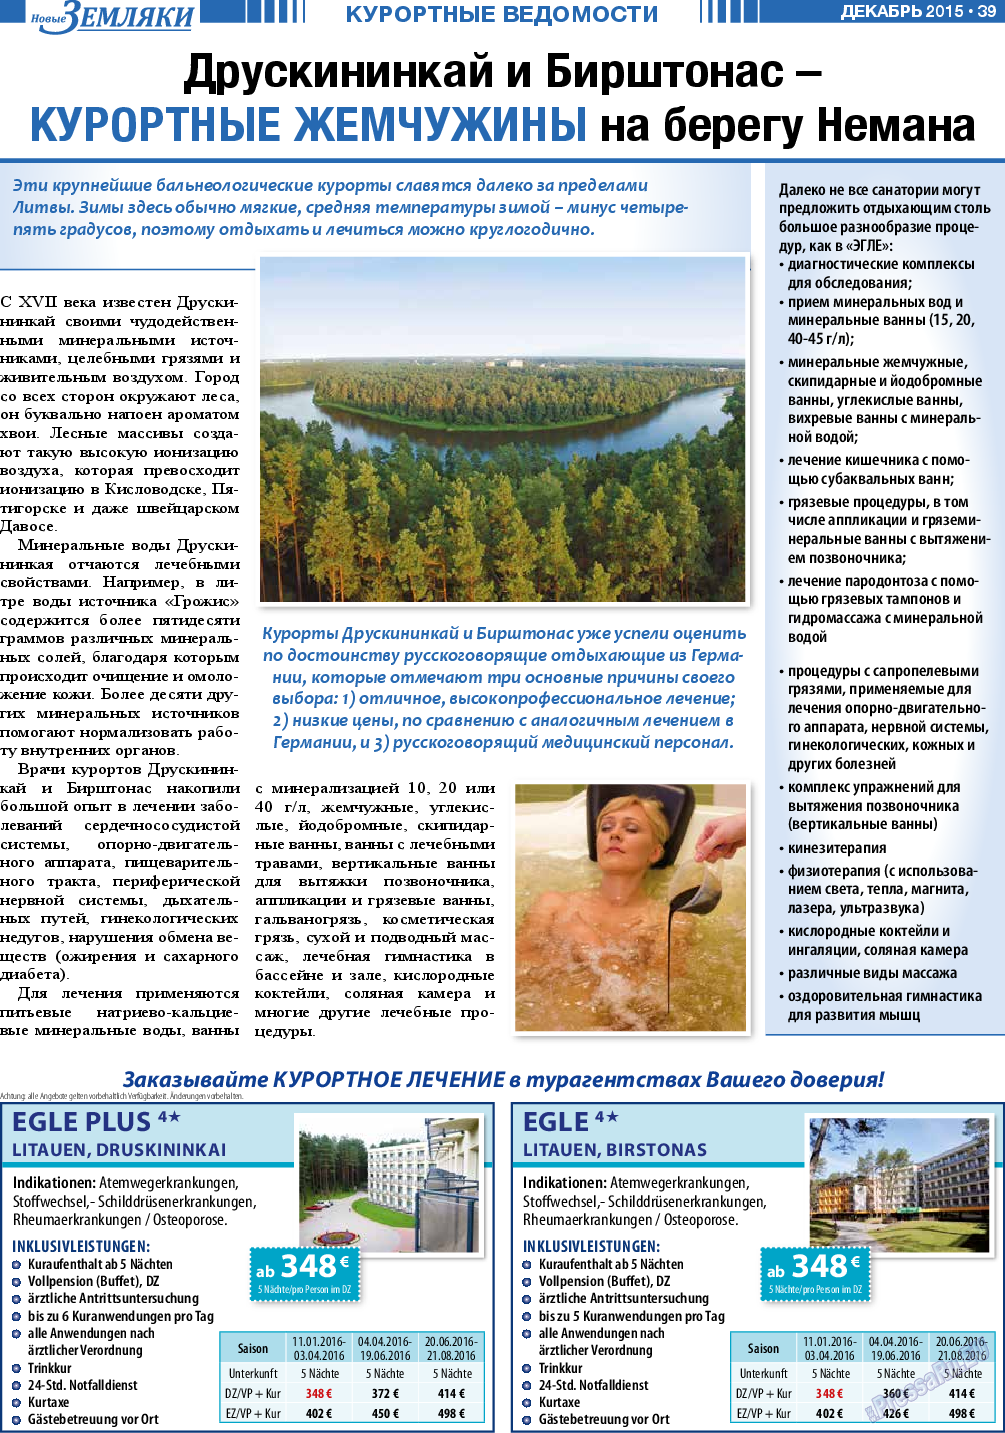 Новые Земляки, газета. 2015 №12 стр.39